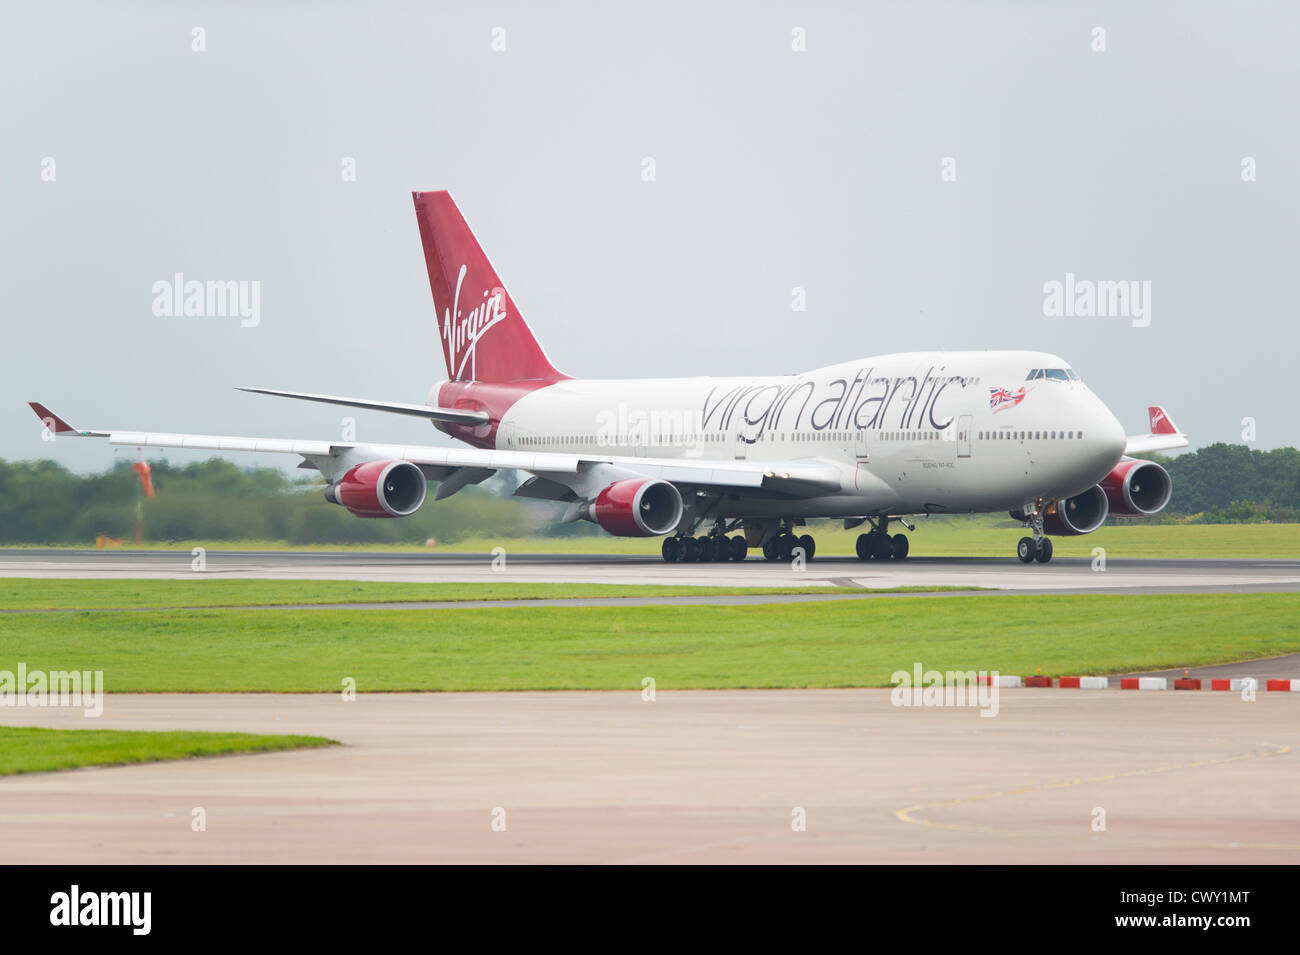 Un Boeing 747 de Virgin Atlantic jumbo-jet sur le point de décoller de l'Aéroport International de Manchester (usage éditorial uniquement) Banque D'Images